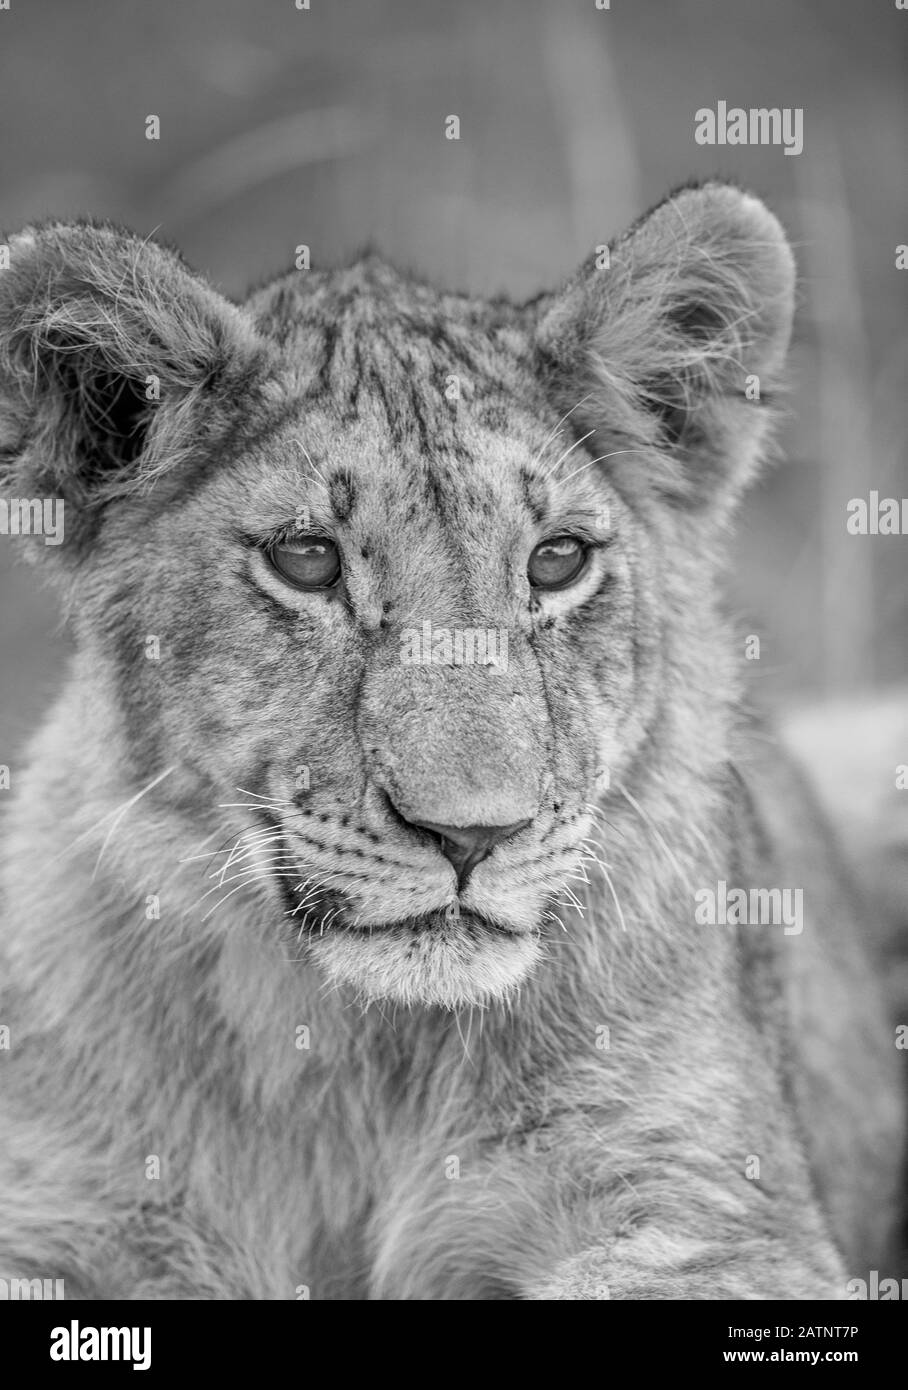 Retrato de leones, Panthera leo, tomado en el Masai Mara Conservancy, Kenia, África Foto de stock